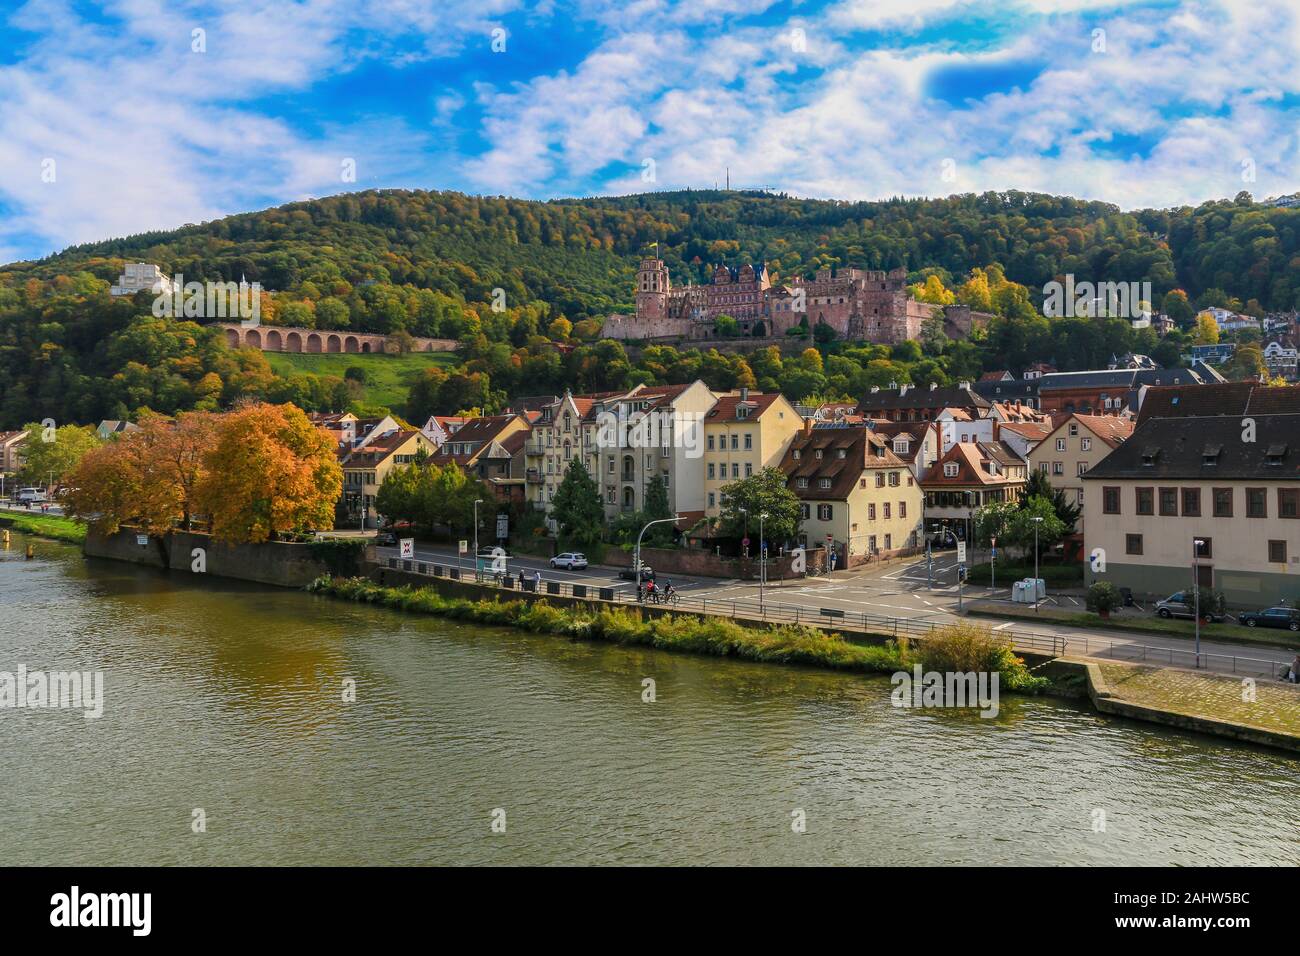 Riverside schöne Aussicht auf die Altstadt von Heidelberg, Deutschland und das berühmte Heidelberger Schloss, eine Ruine und Wahrzeichen auf dem nördlichen Teil der... Stockfoto